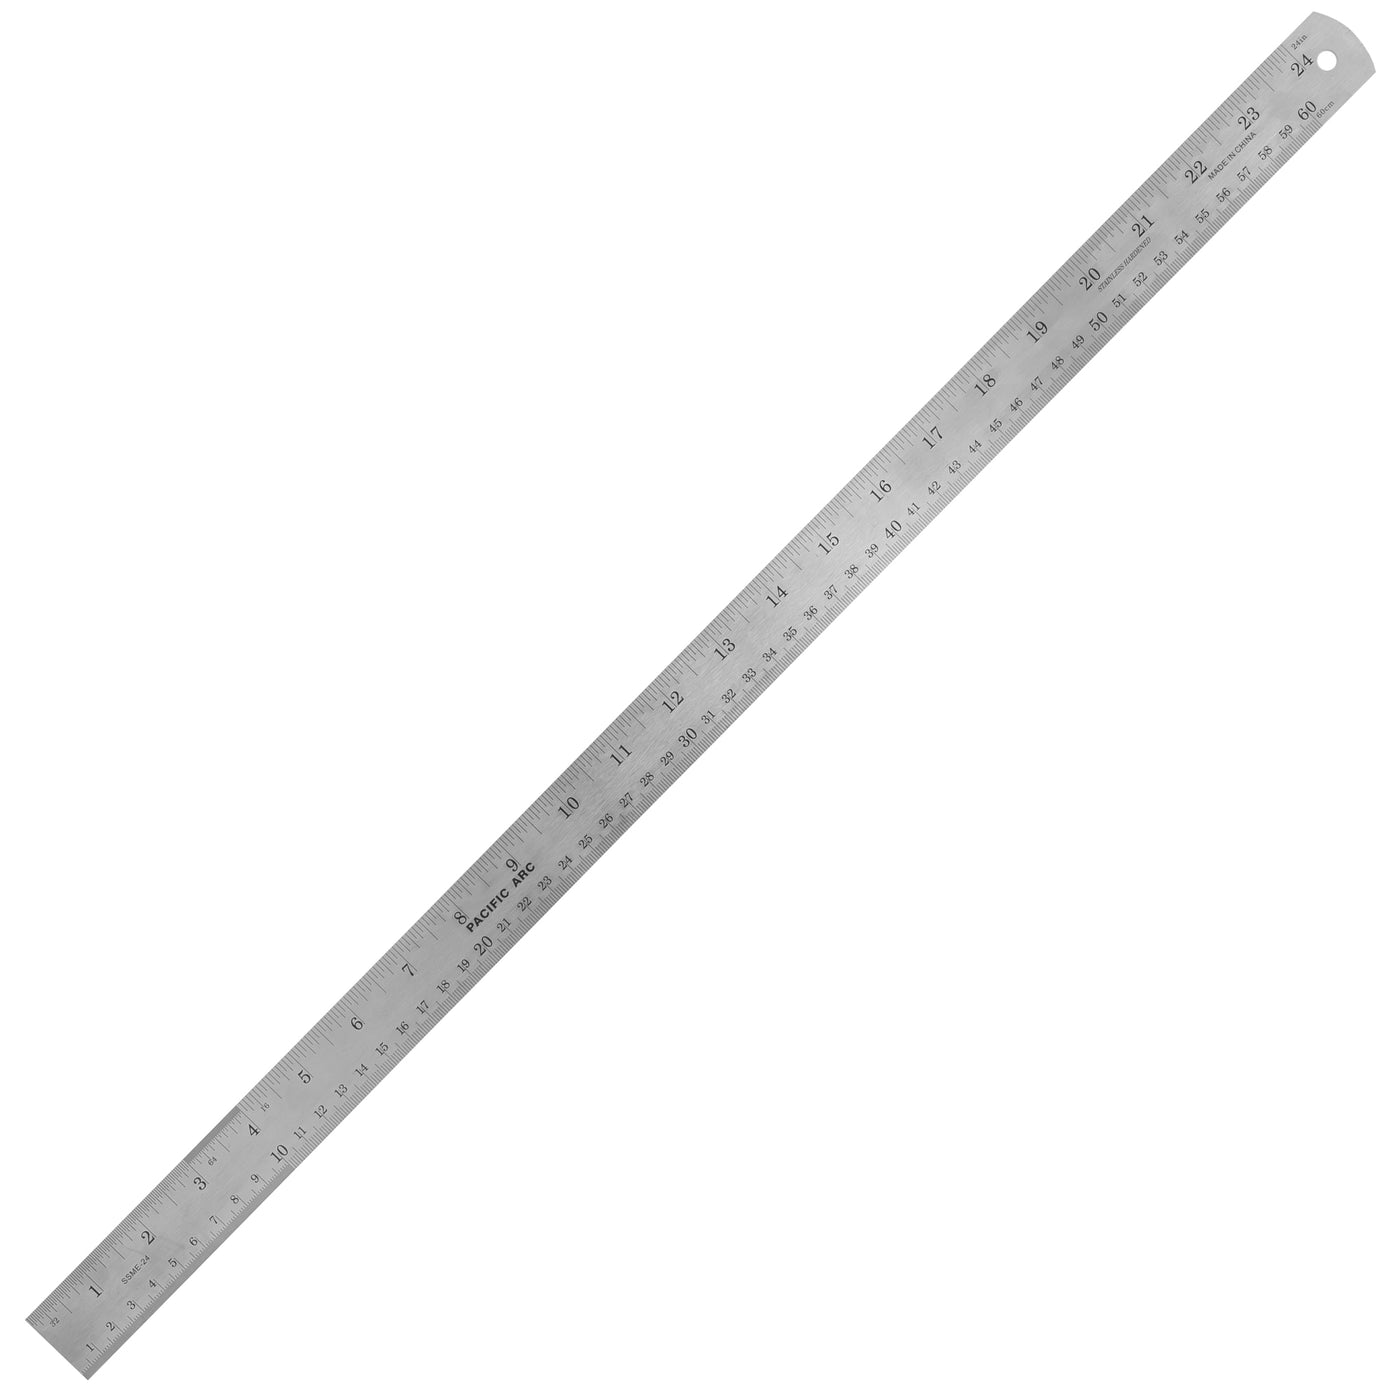 Stainless Steel Ruler, 24 Metal Rulers 1.5 Wide Inch Metric Graduation